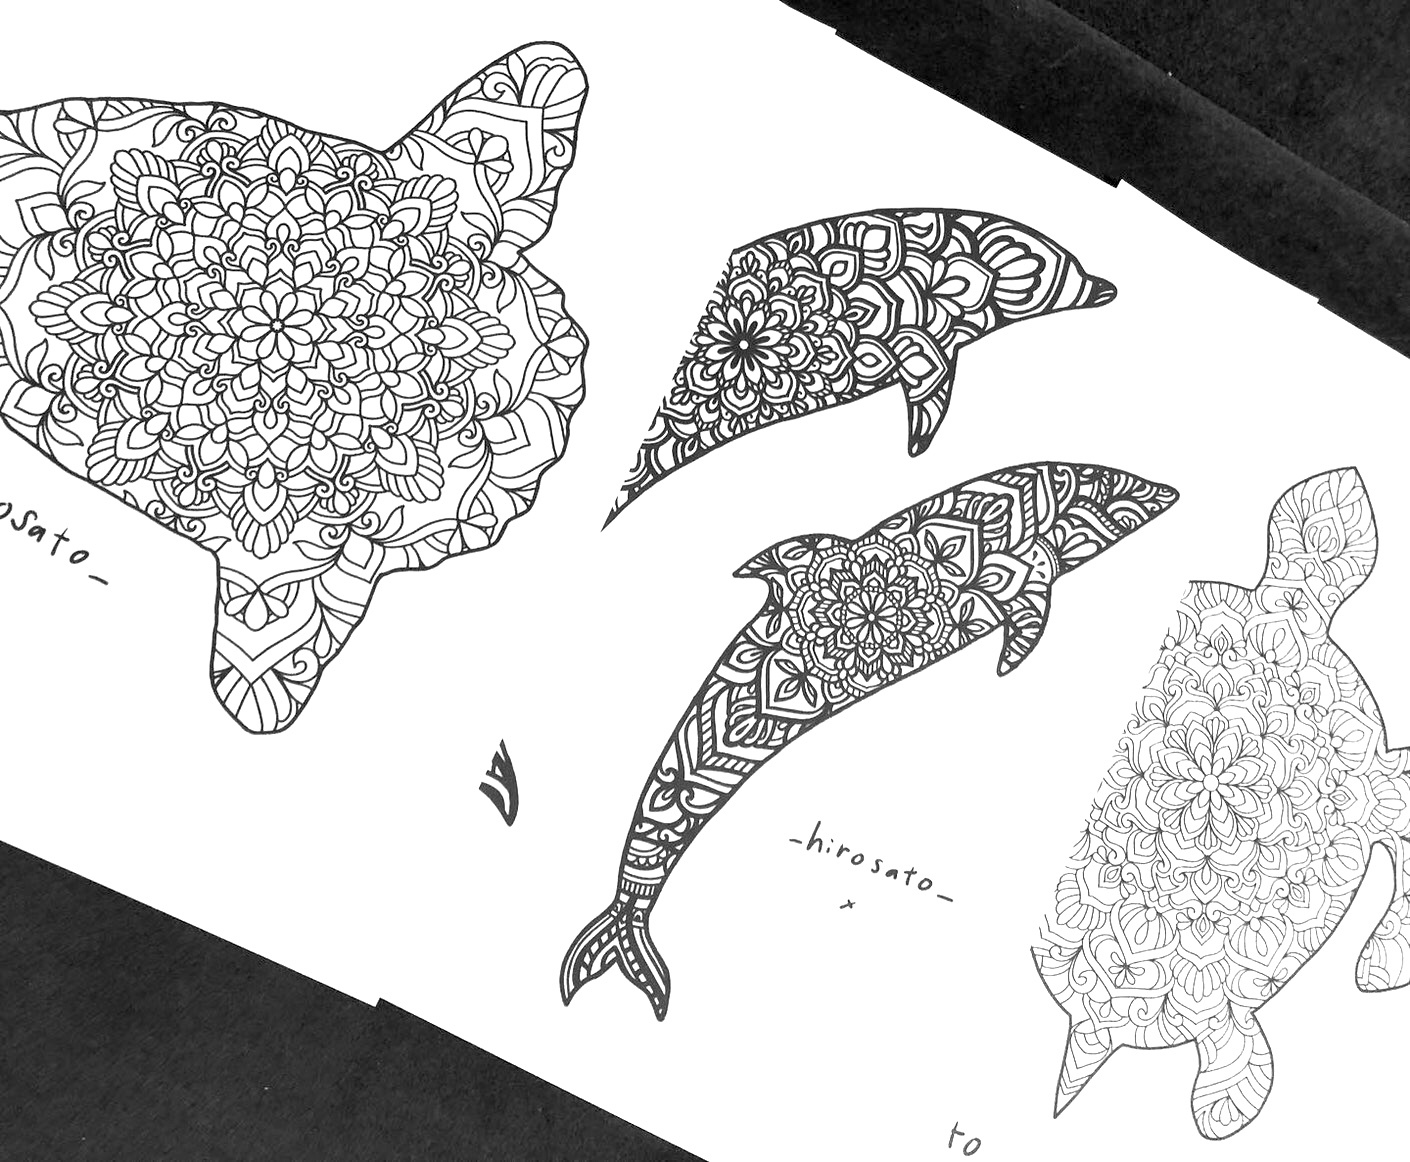 [塗り絵] 海の生き物 8枚セット vol.1 | _hirosato_